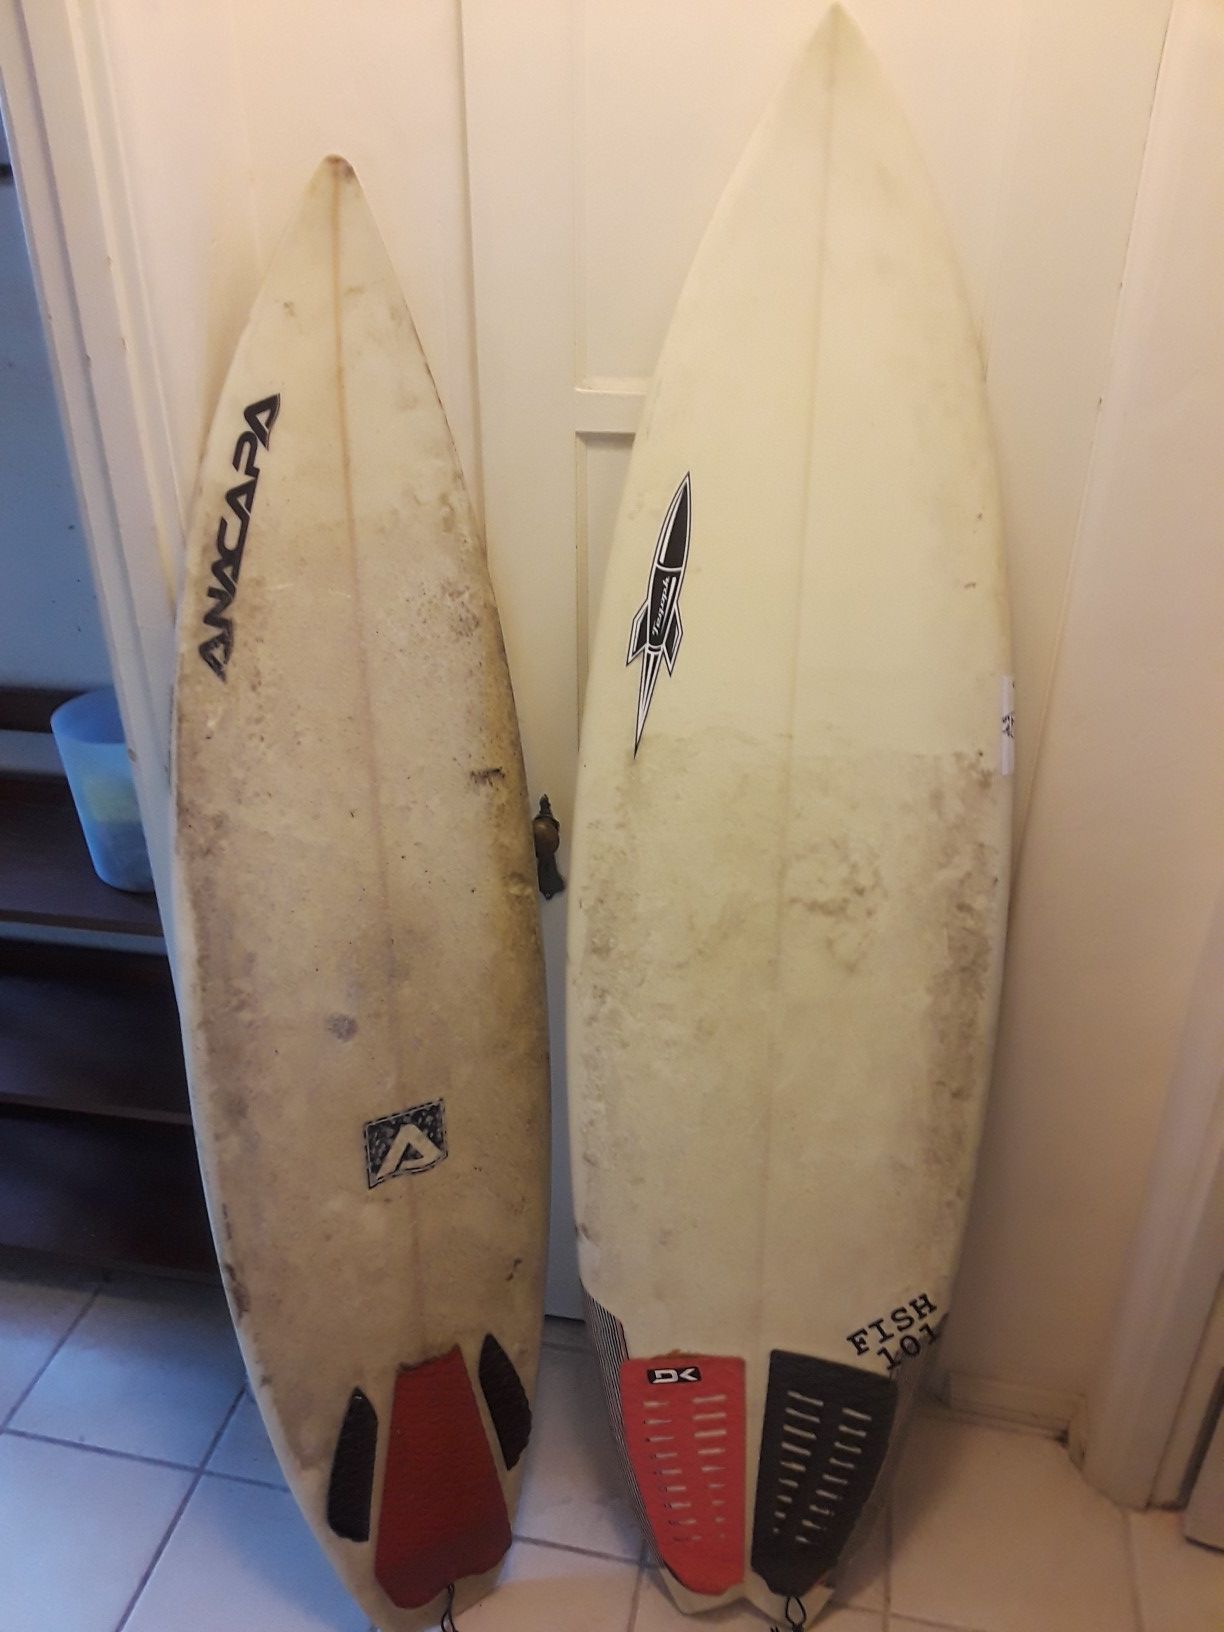 30$ each surfboard